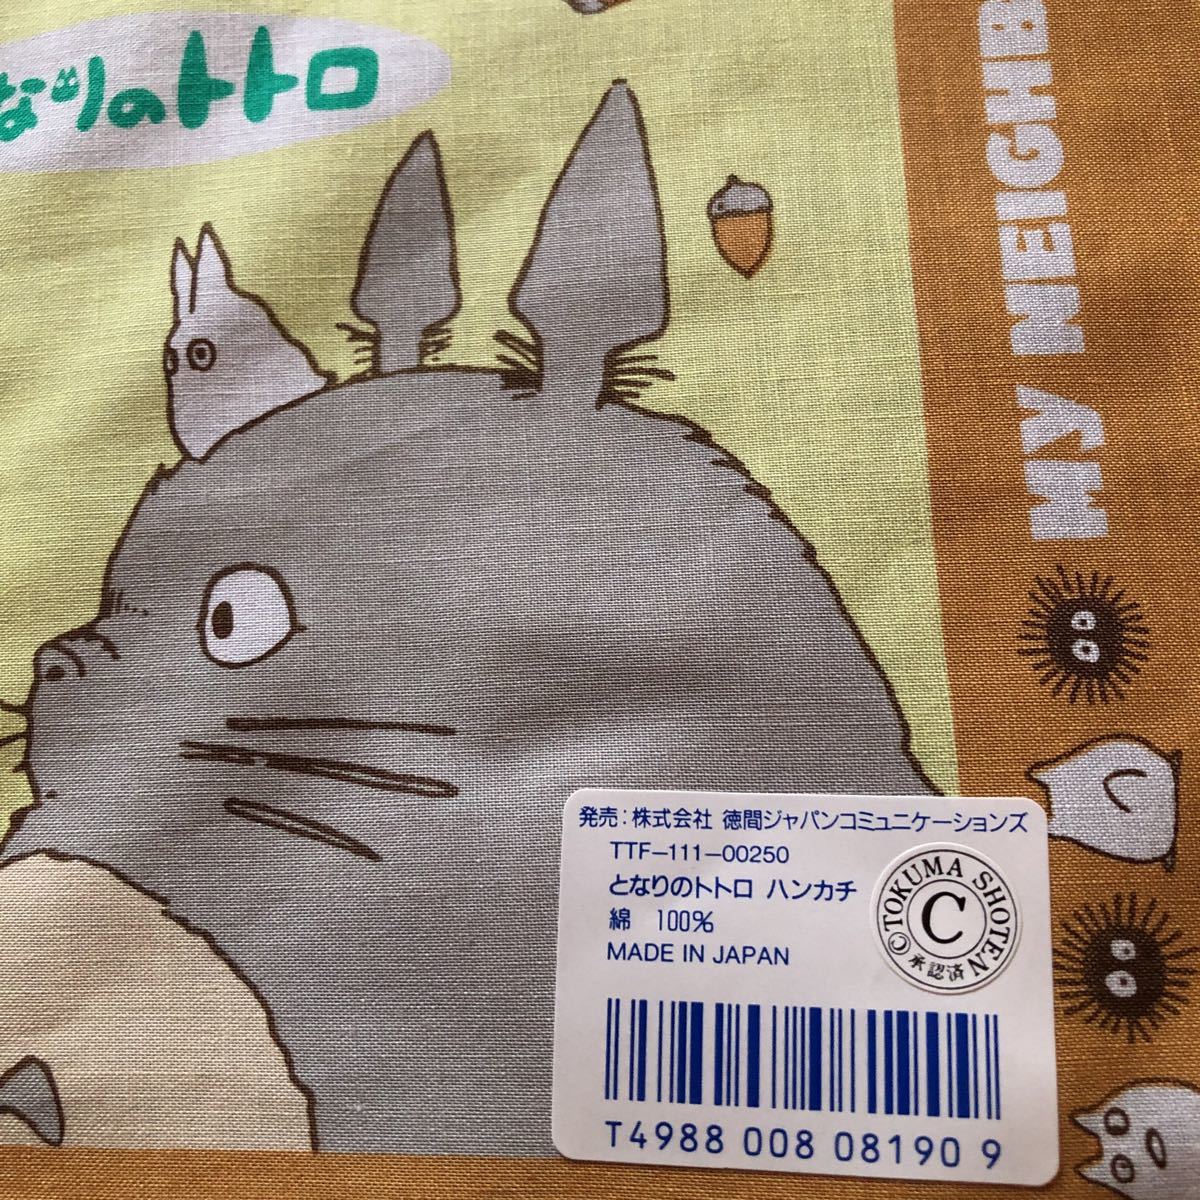 * retro * rare rare goods Tonari no Totoro handkerchie yellow that time thing 